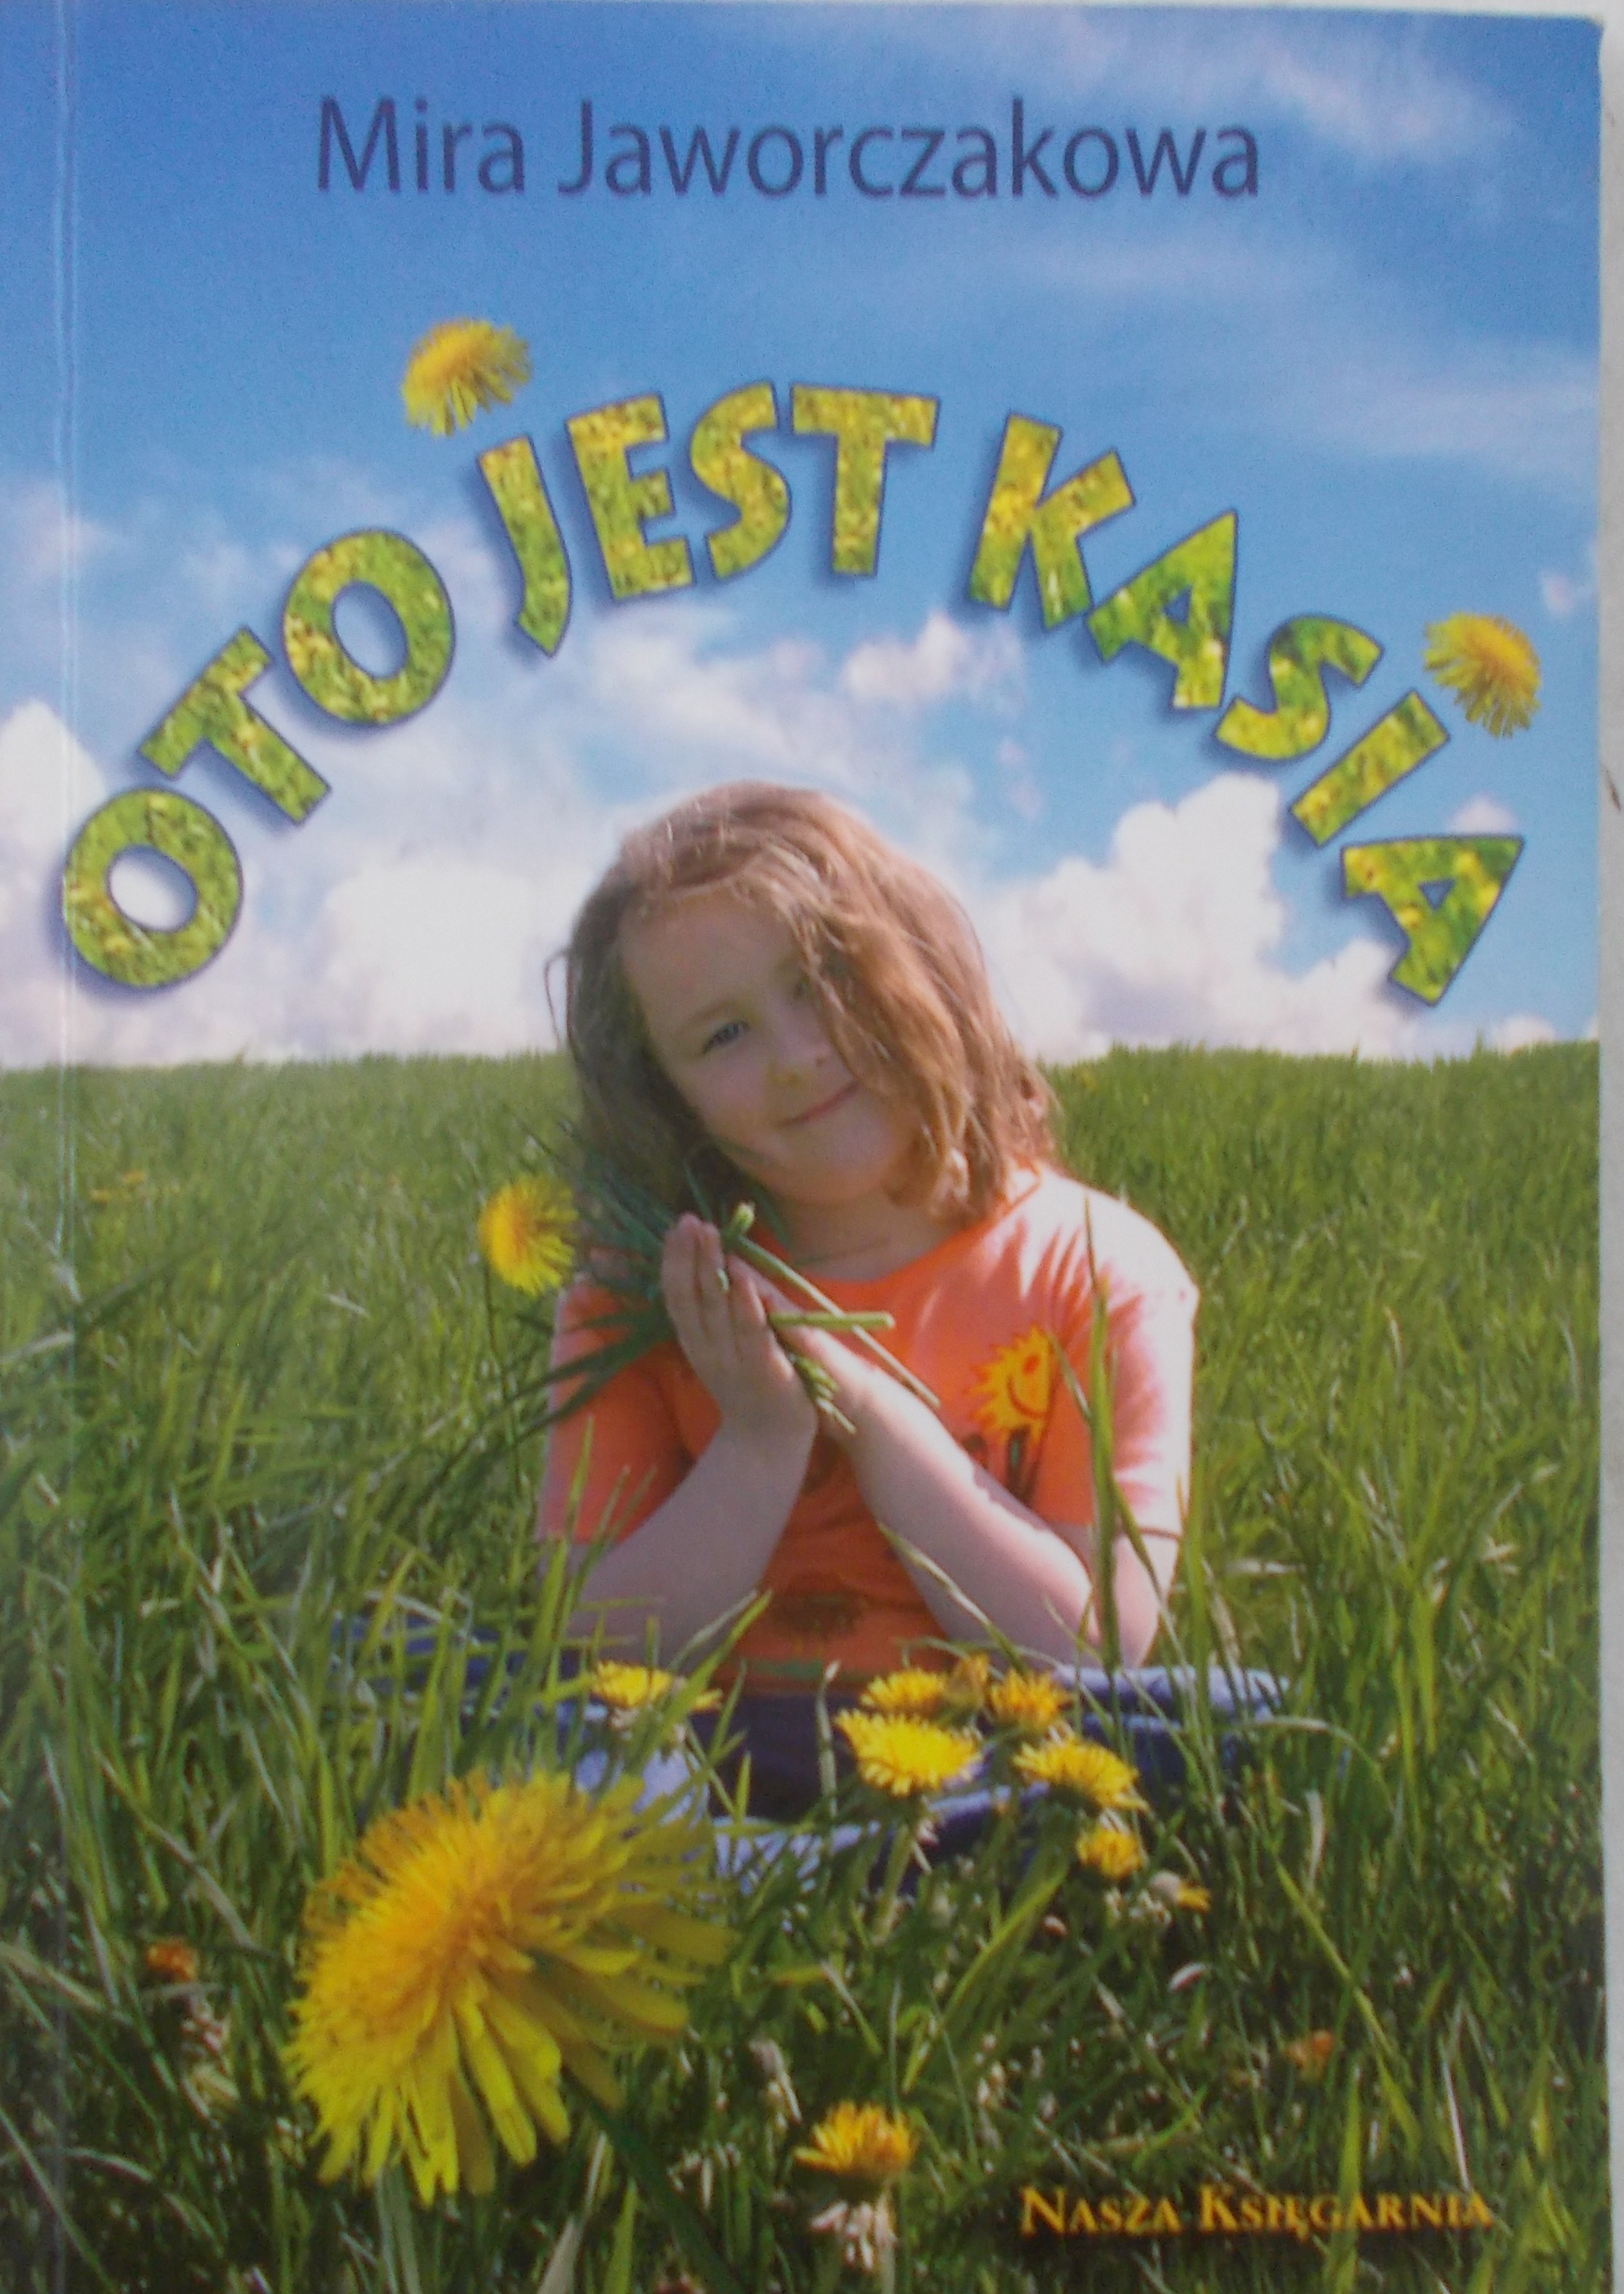 Film Oto Jest Kasia Po Polsku Oto jest Kasia - Mira Jaworczakowa - 7.00 zł. - Tezeusz.pl